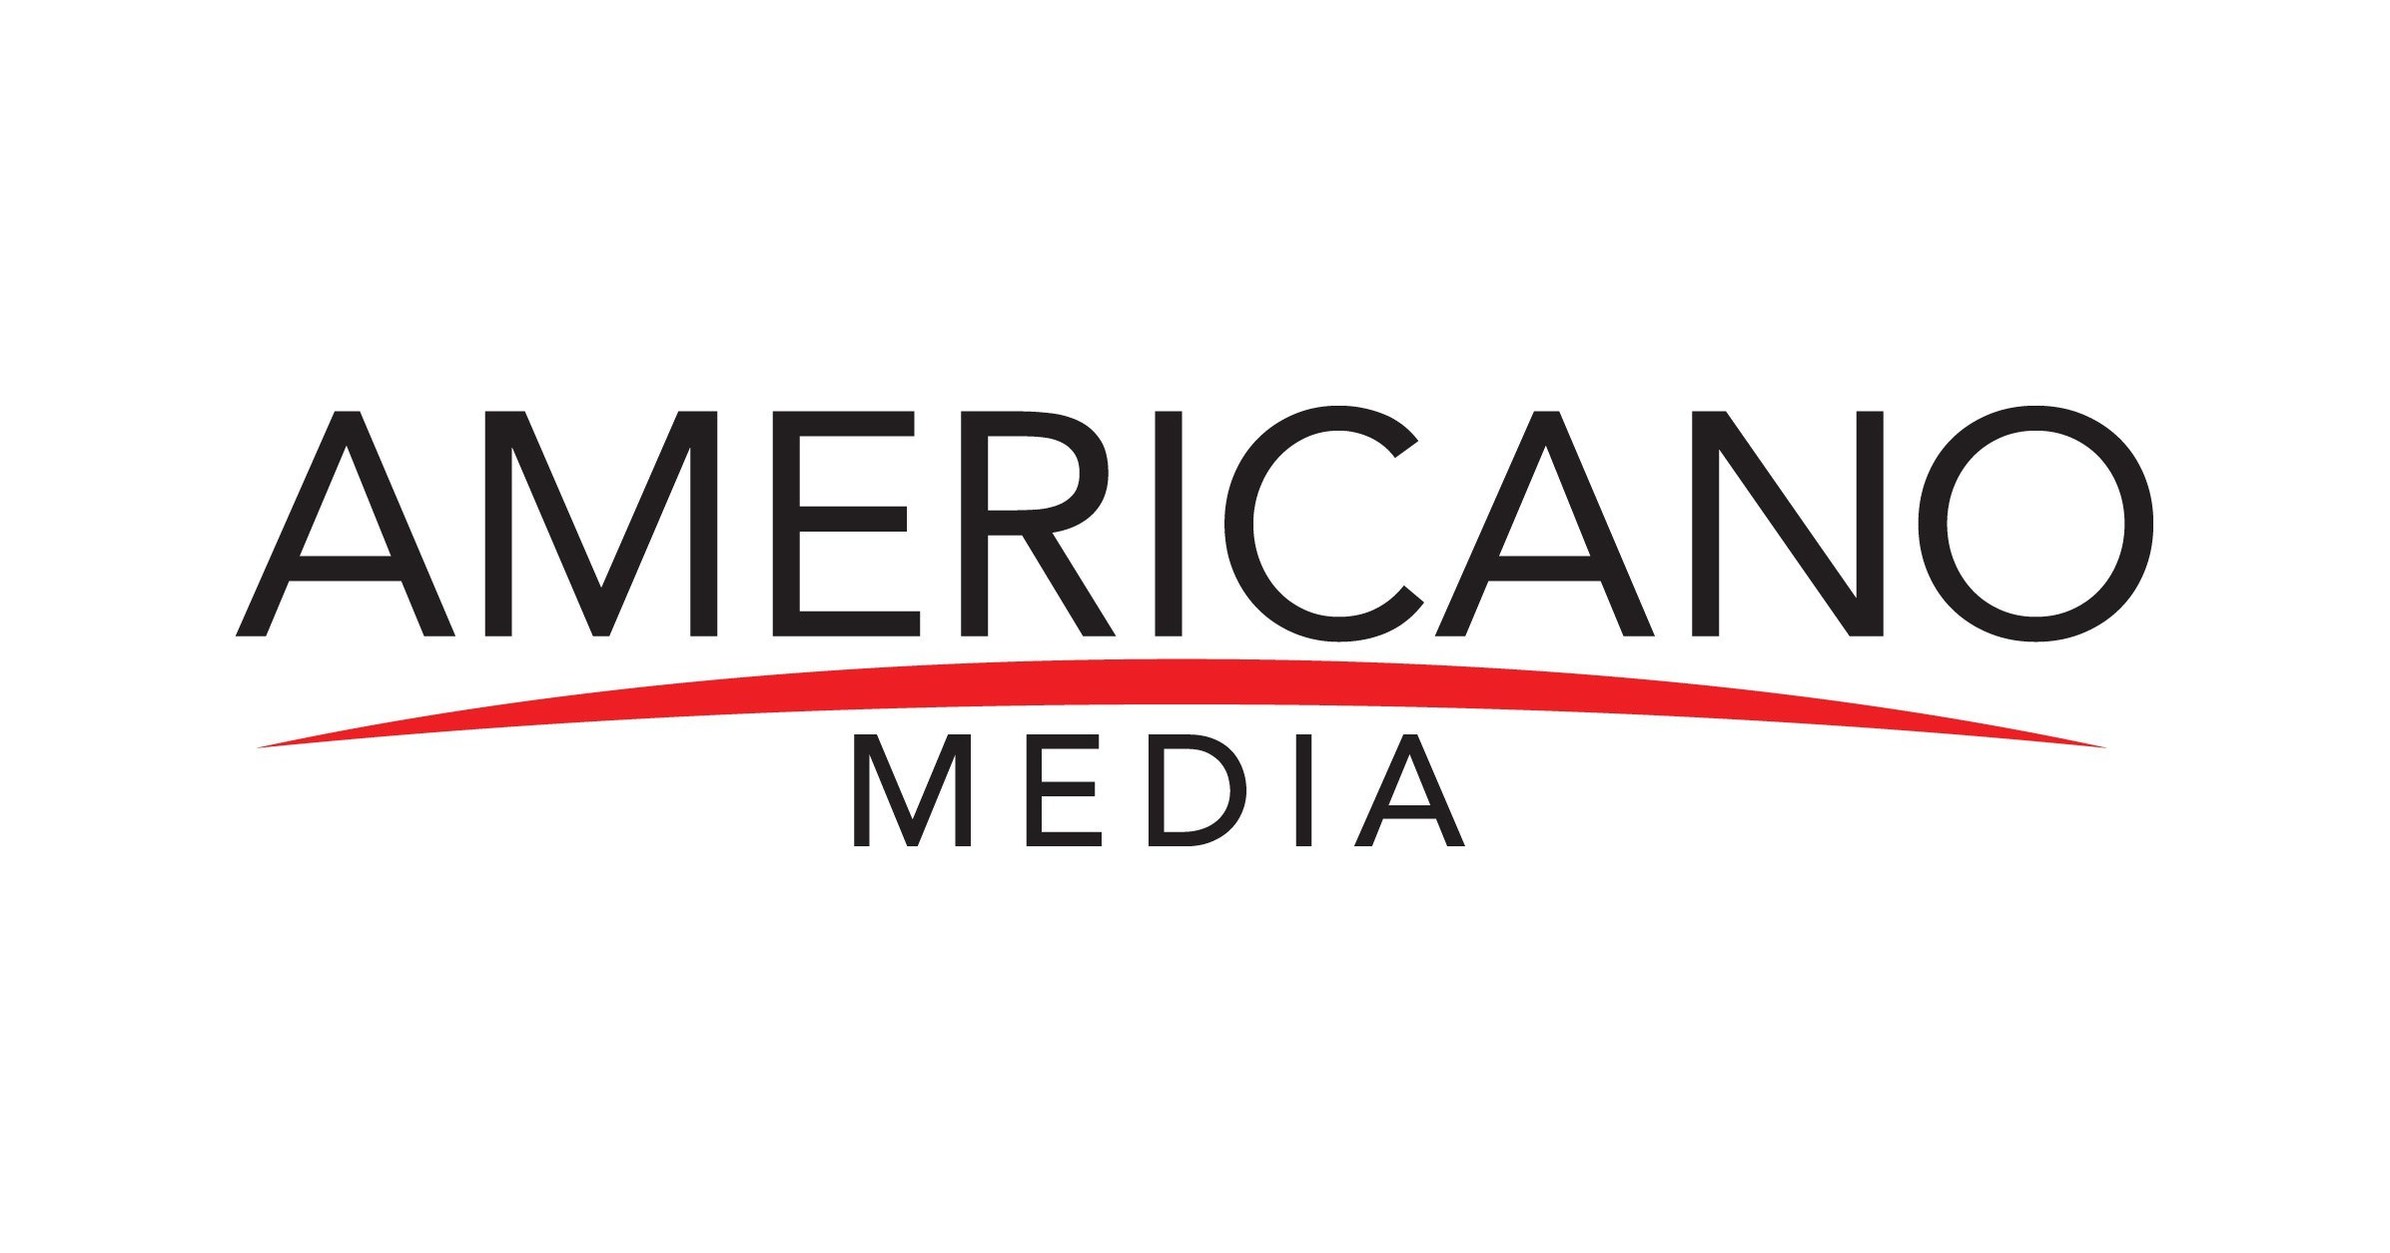 Americano Media anuncia acuerdo de transmisión con Reputation